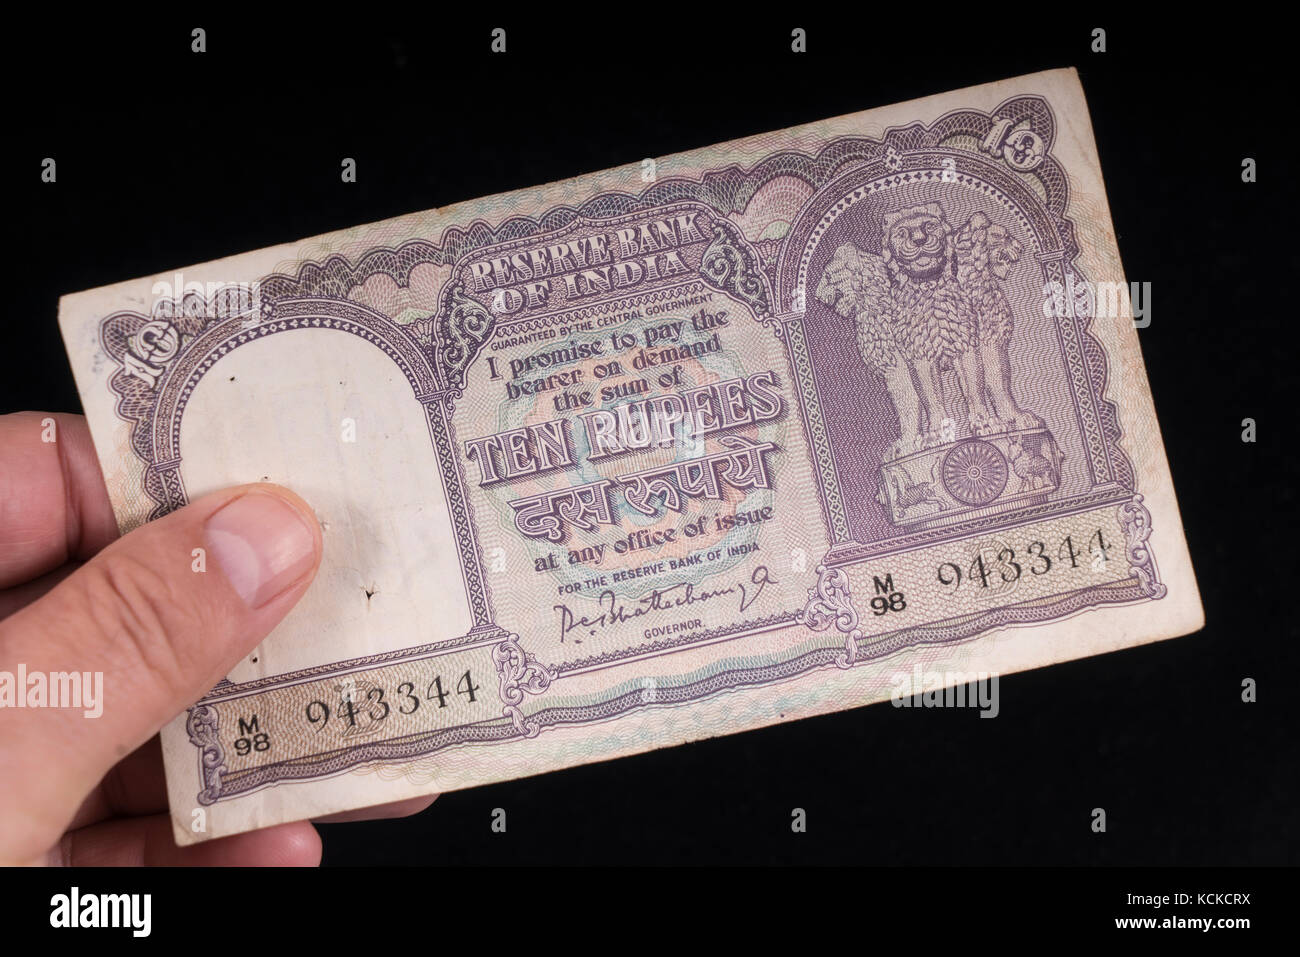 Un viejo billete indio a mano Foto de stock